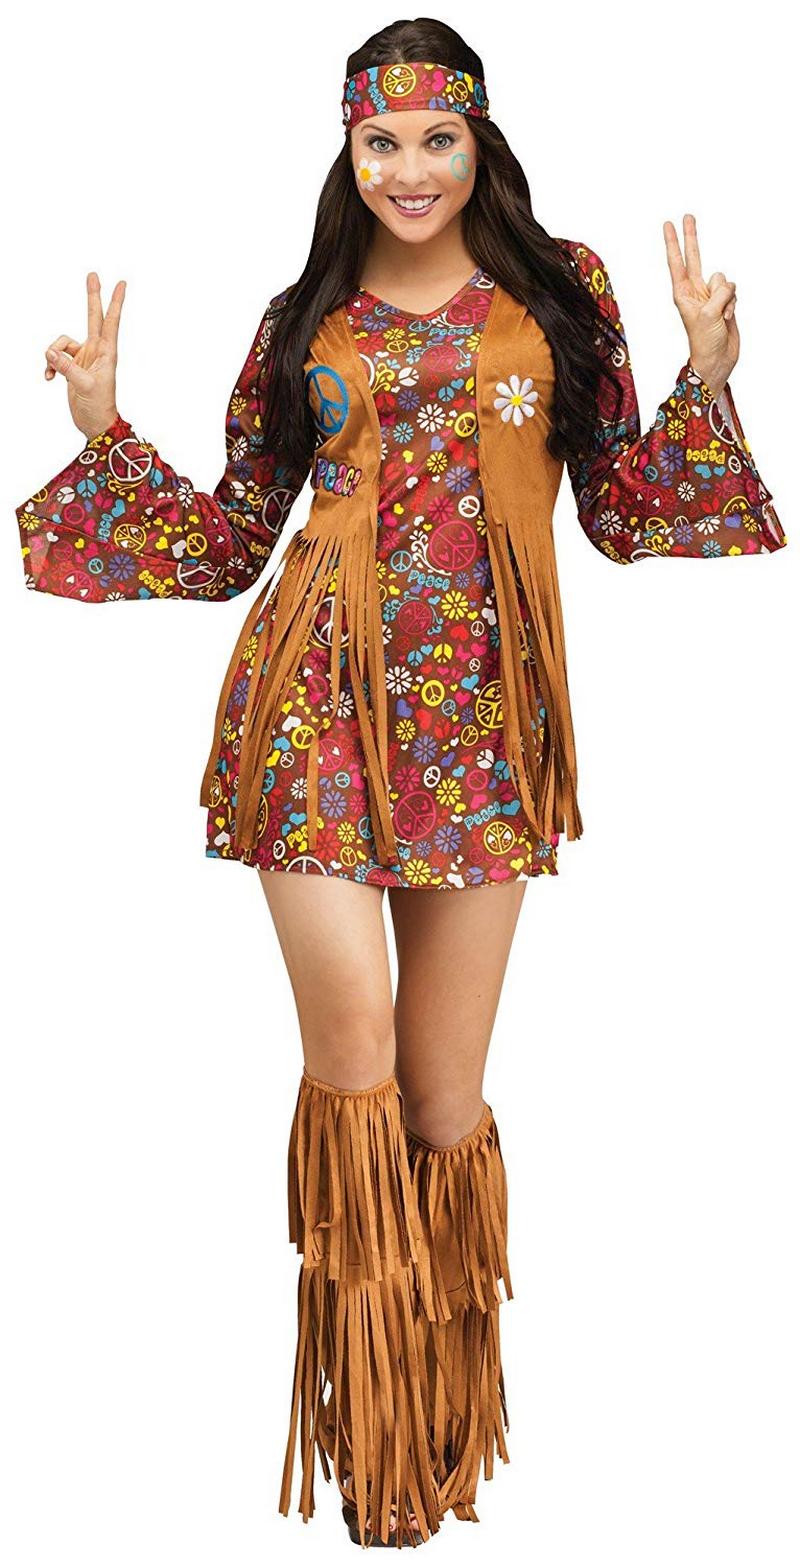  Boho Hippie stil kläder (9)